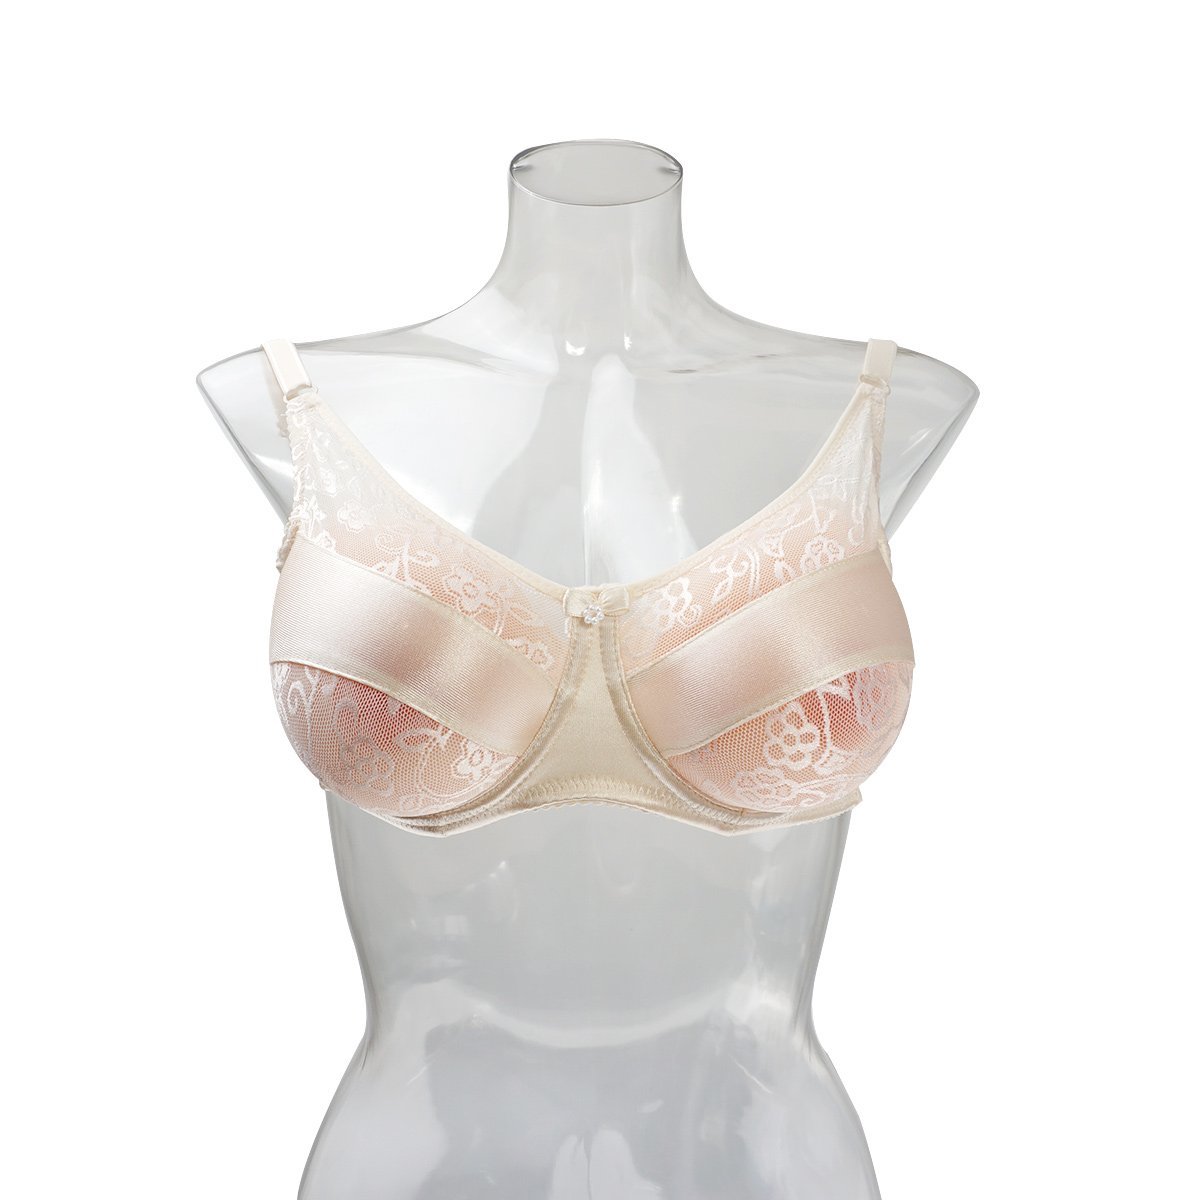 人工乳房用 ブラジャー シリコンバスト36/80 対応C、D、D+カップ 女装 コスプレに セクシー ブラジャー 肌色_画像6